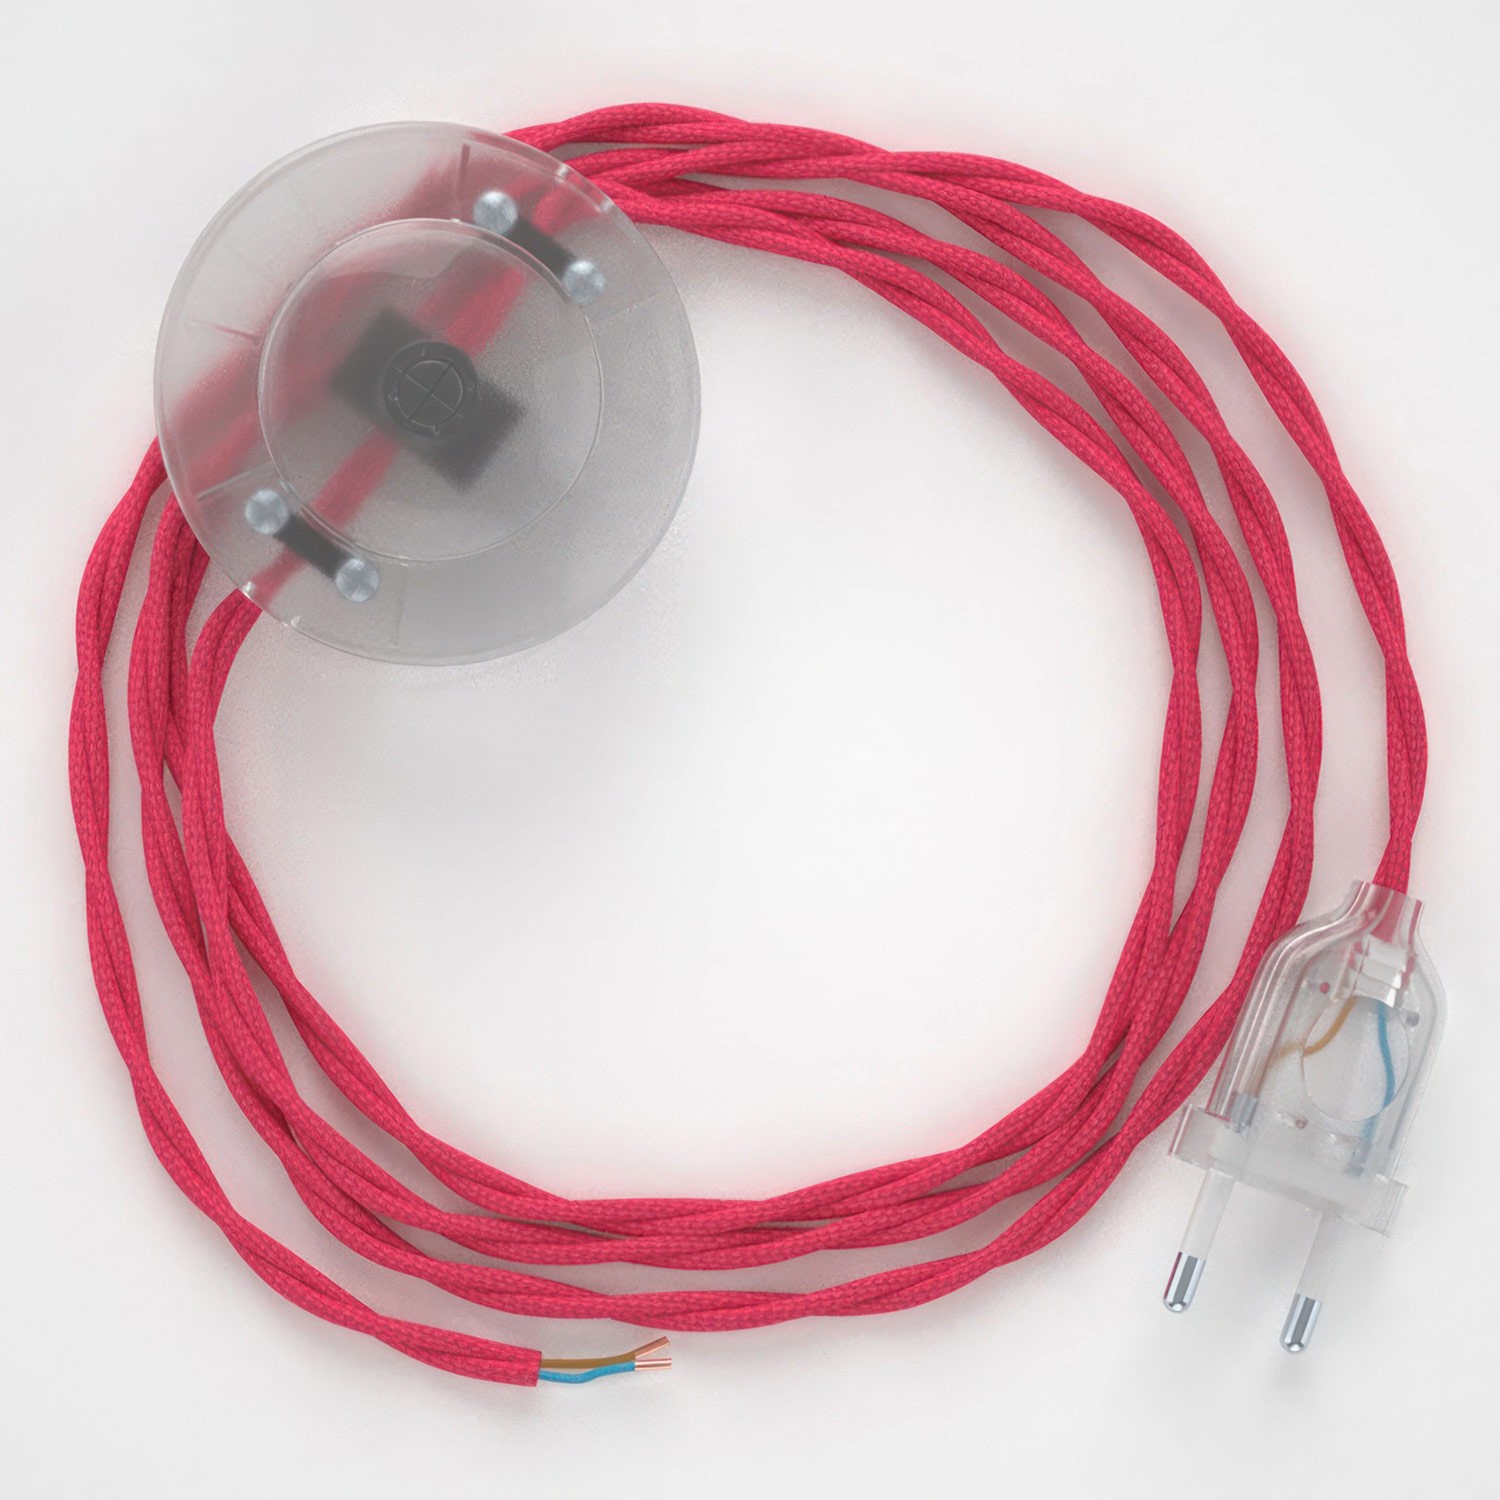 Cableado para lámpara de pie, cable TM08 Efecto Seda Fuchsia 3 m. Elige tu el color de la clavija y del interruptor!